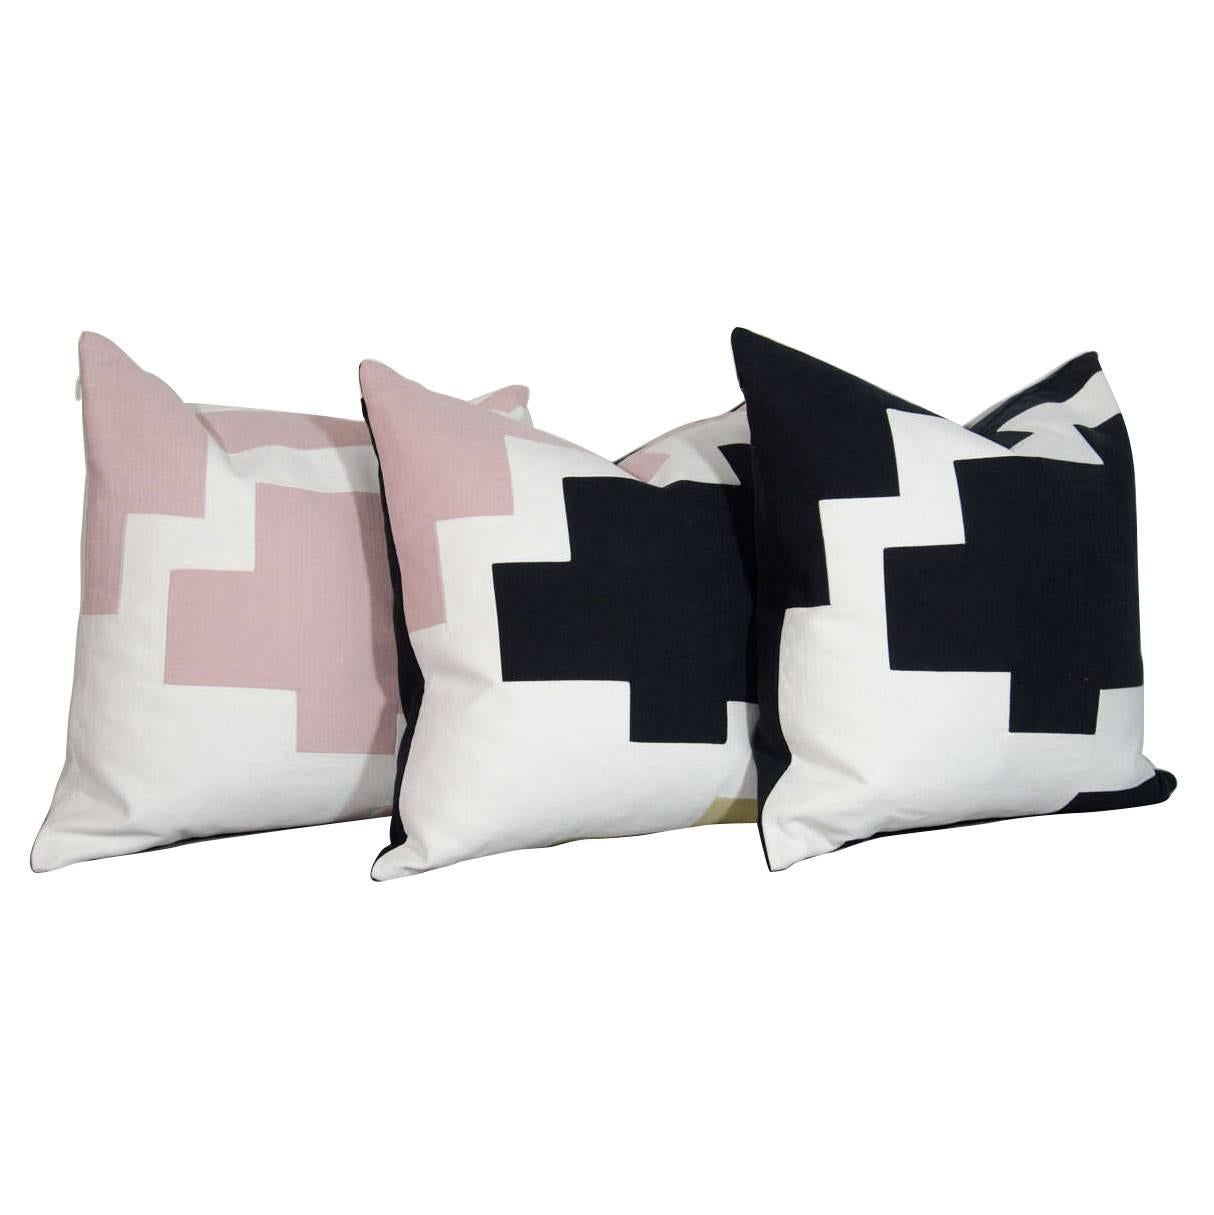 Architectural Italian Linen Throw Pillows by Arguello Casa